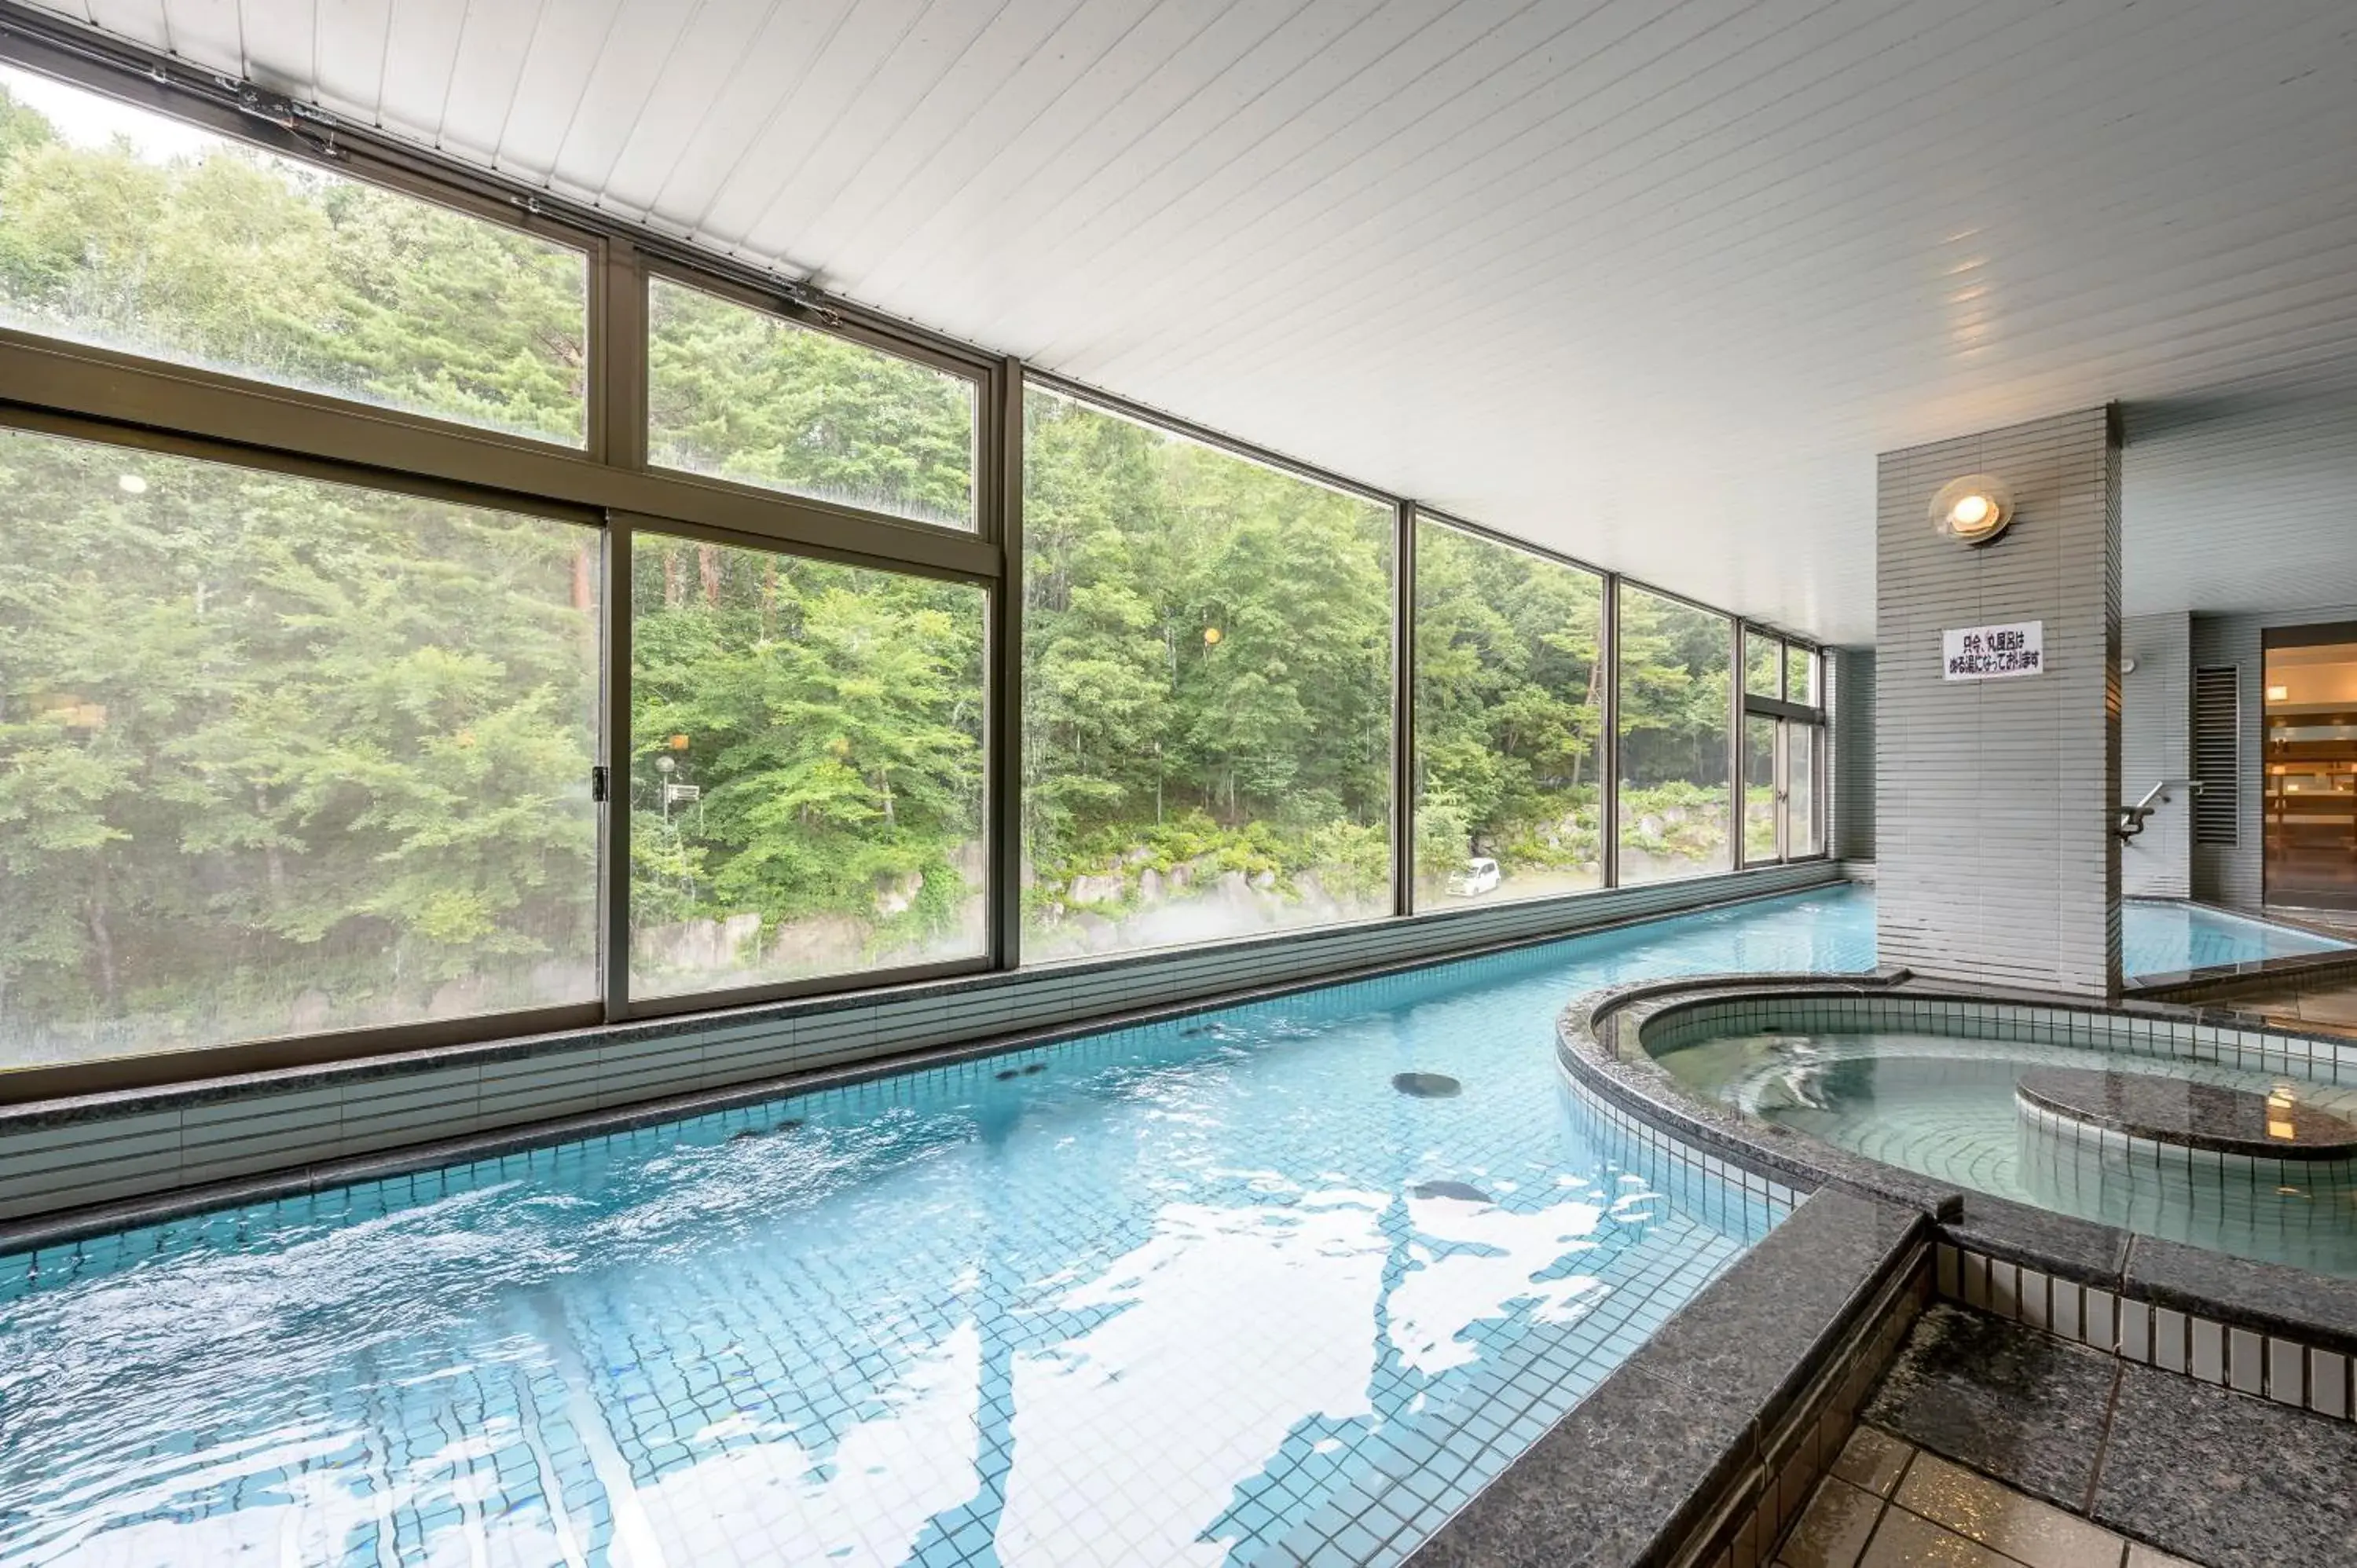 Public Bath, Swimming Pool in Hotel Tagawa